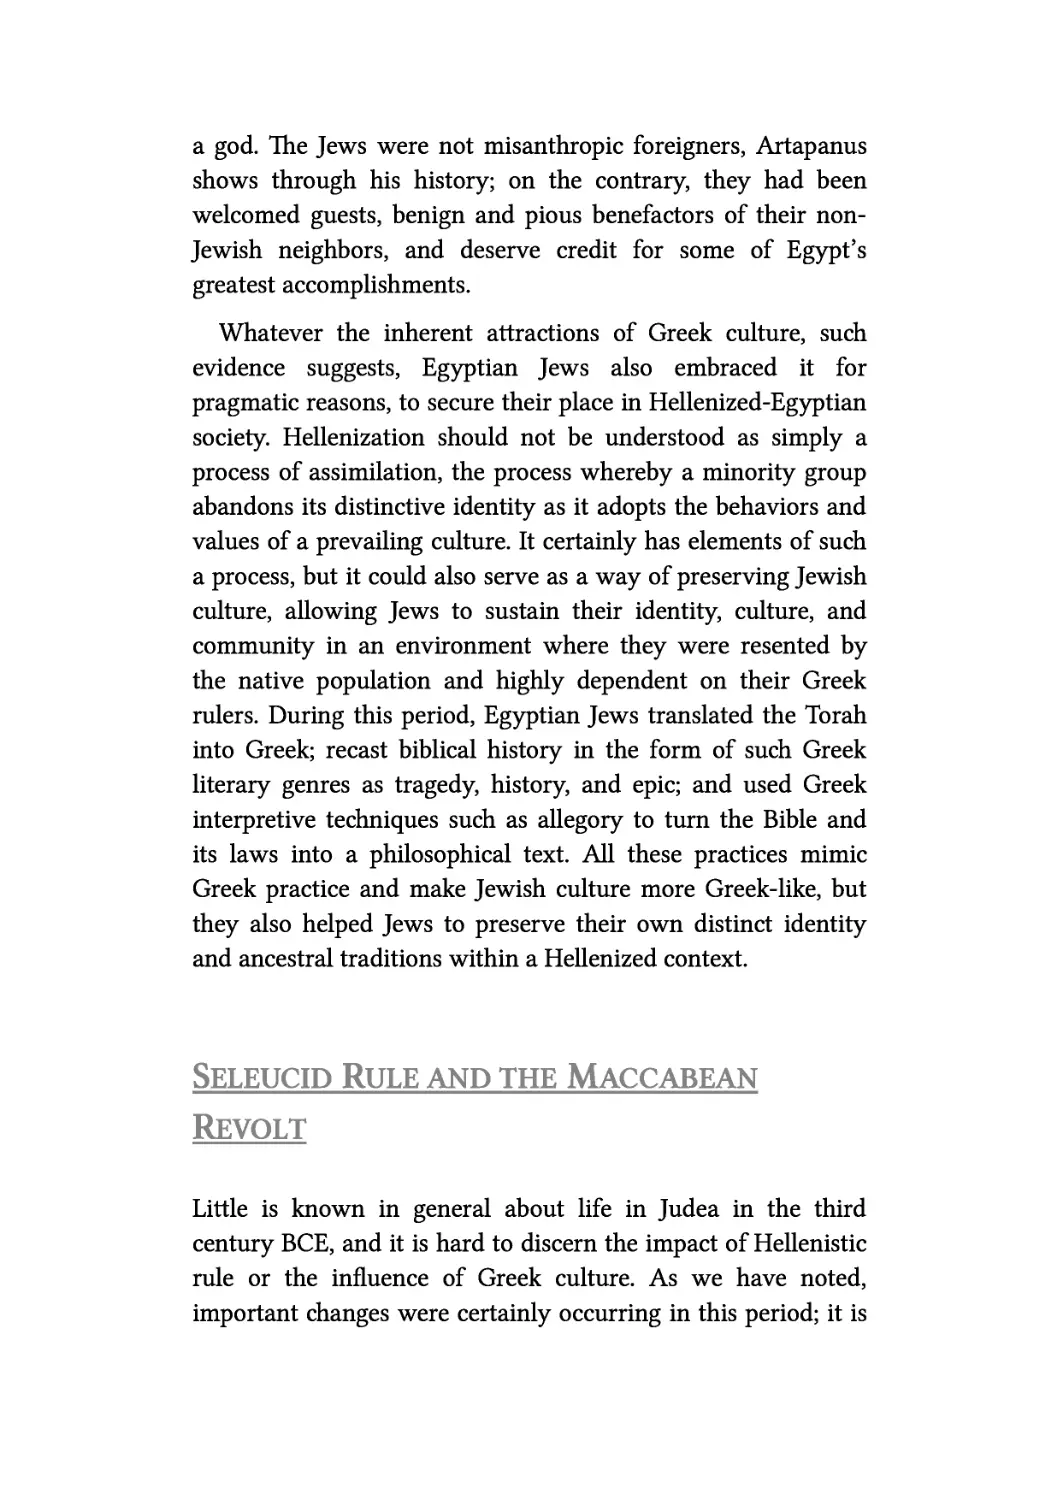 Seleucid Rule and the Maccabean Revolt